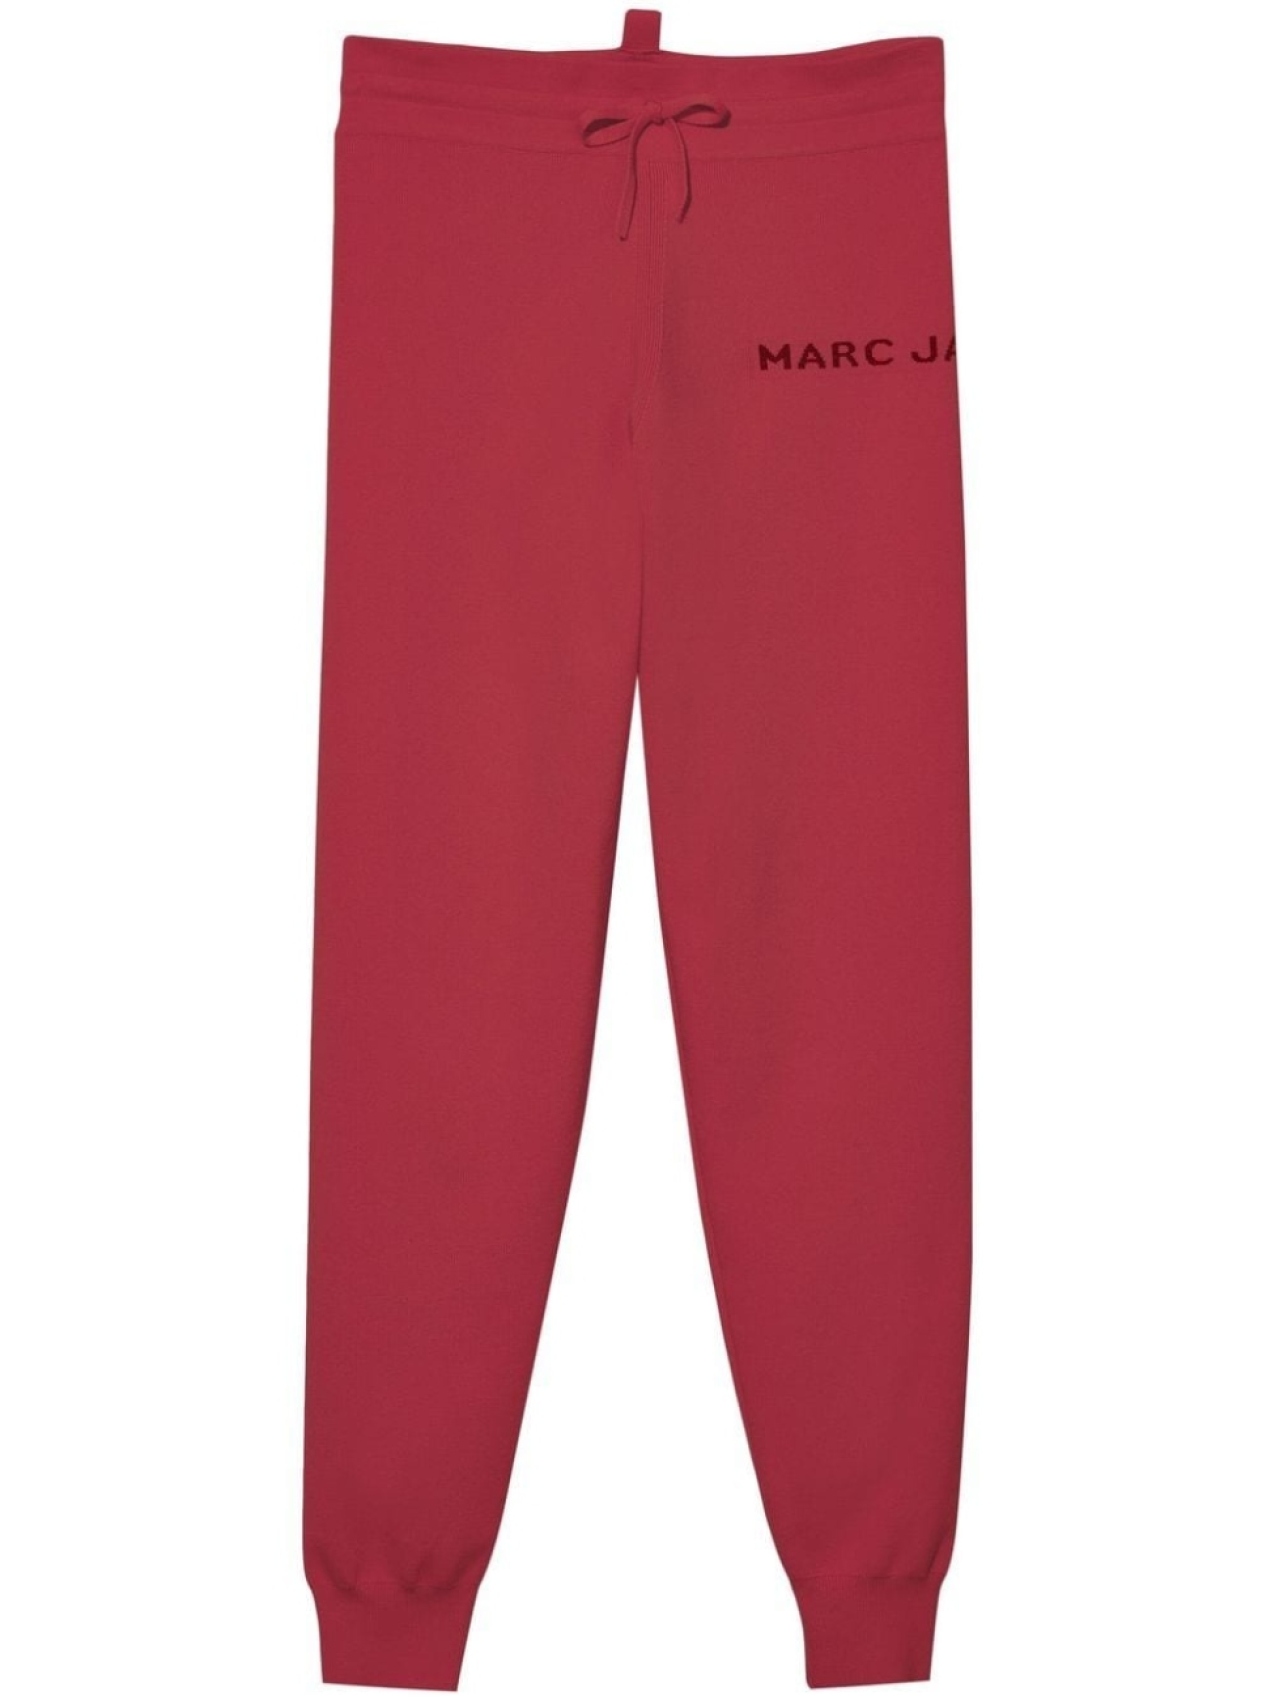 Спортивные брюки The Sweatpants Marc Jacobs, красный